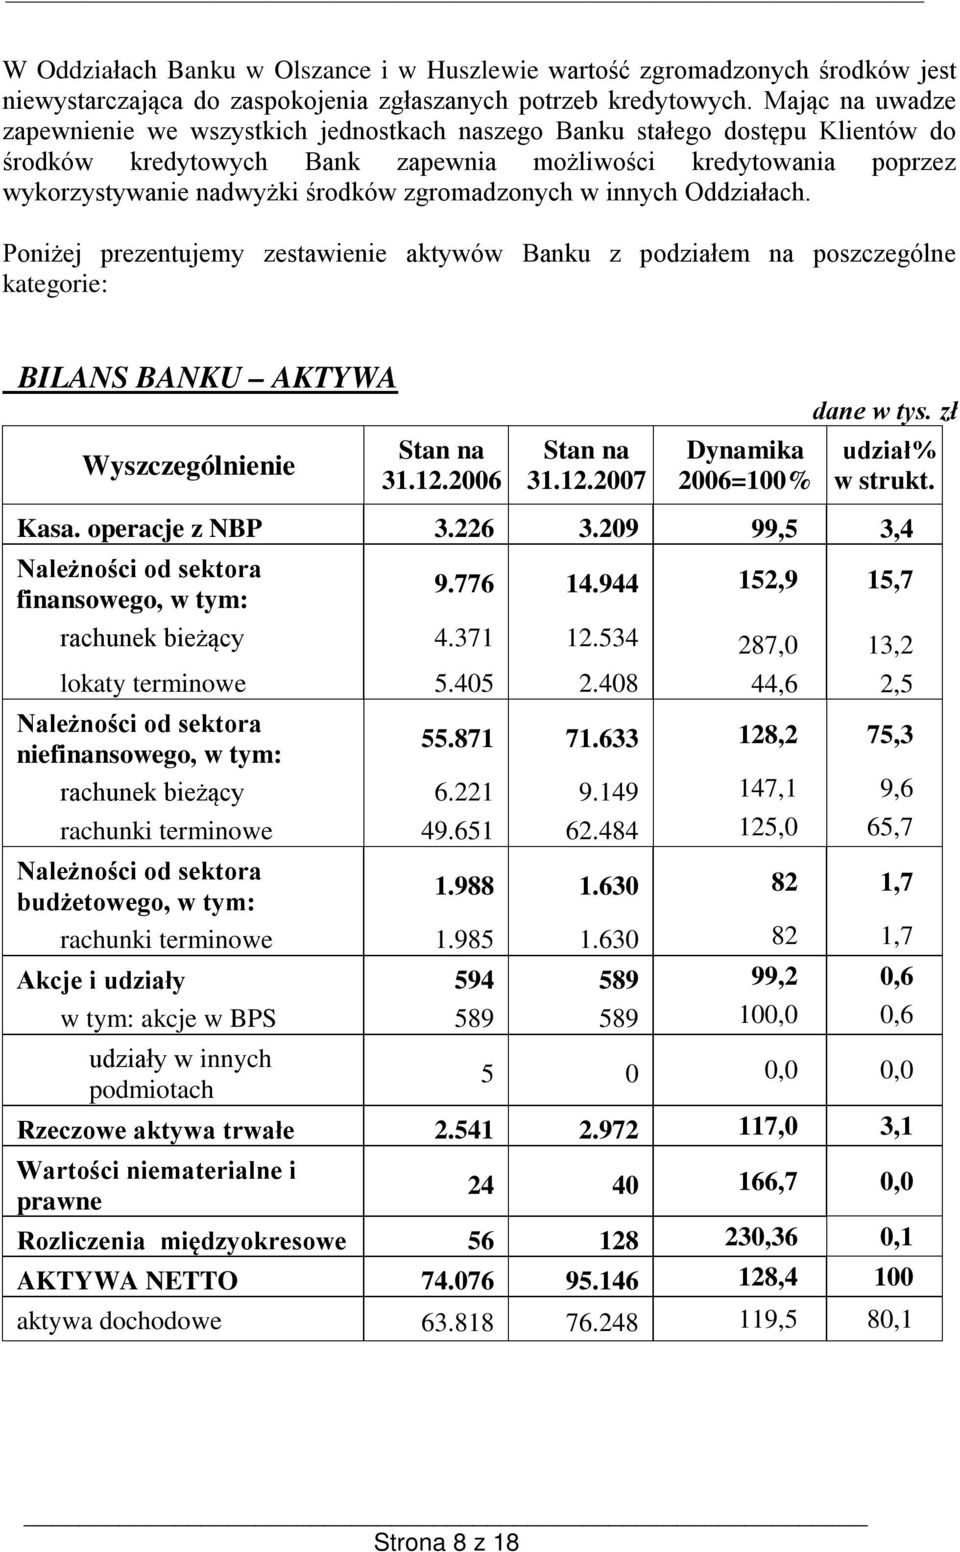 zgromadzonych w innych Oddziałach. Poniżej prezentujemy zestawienie aktywów Banku z podziałem na poszczególne kategorie: BILANS BANKU AKTYWA Wyszczególnienie 31.12.2006 31.12.2007 Dynamika 2006=100% dane w tys.